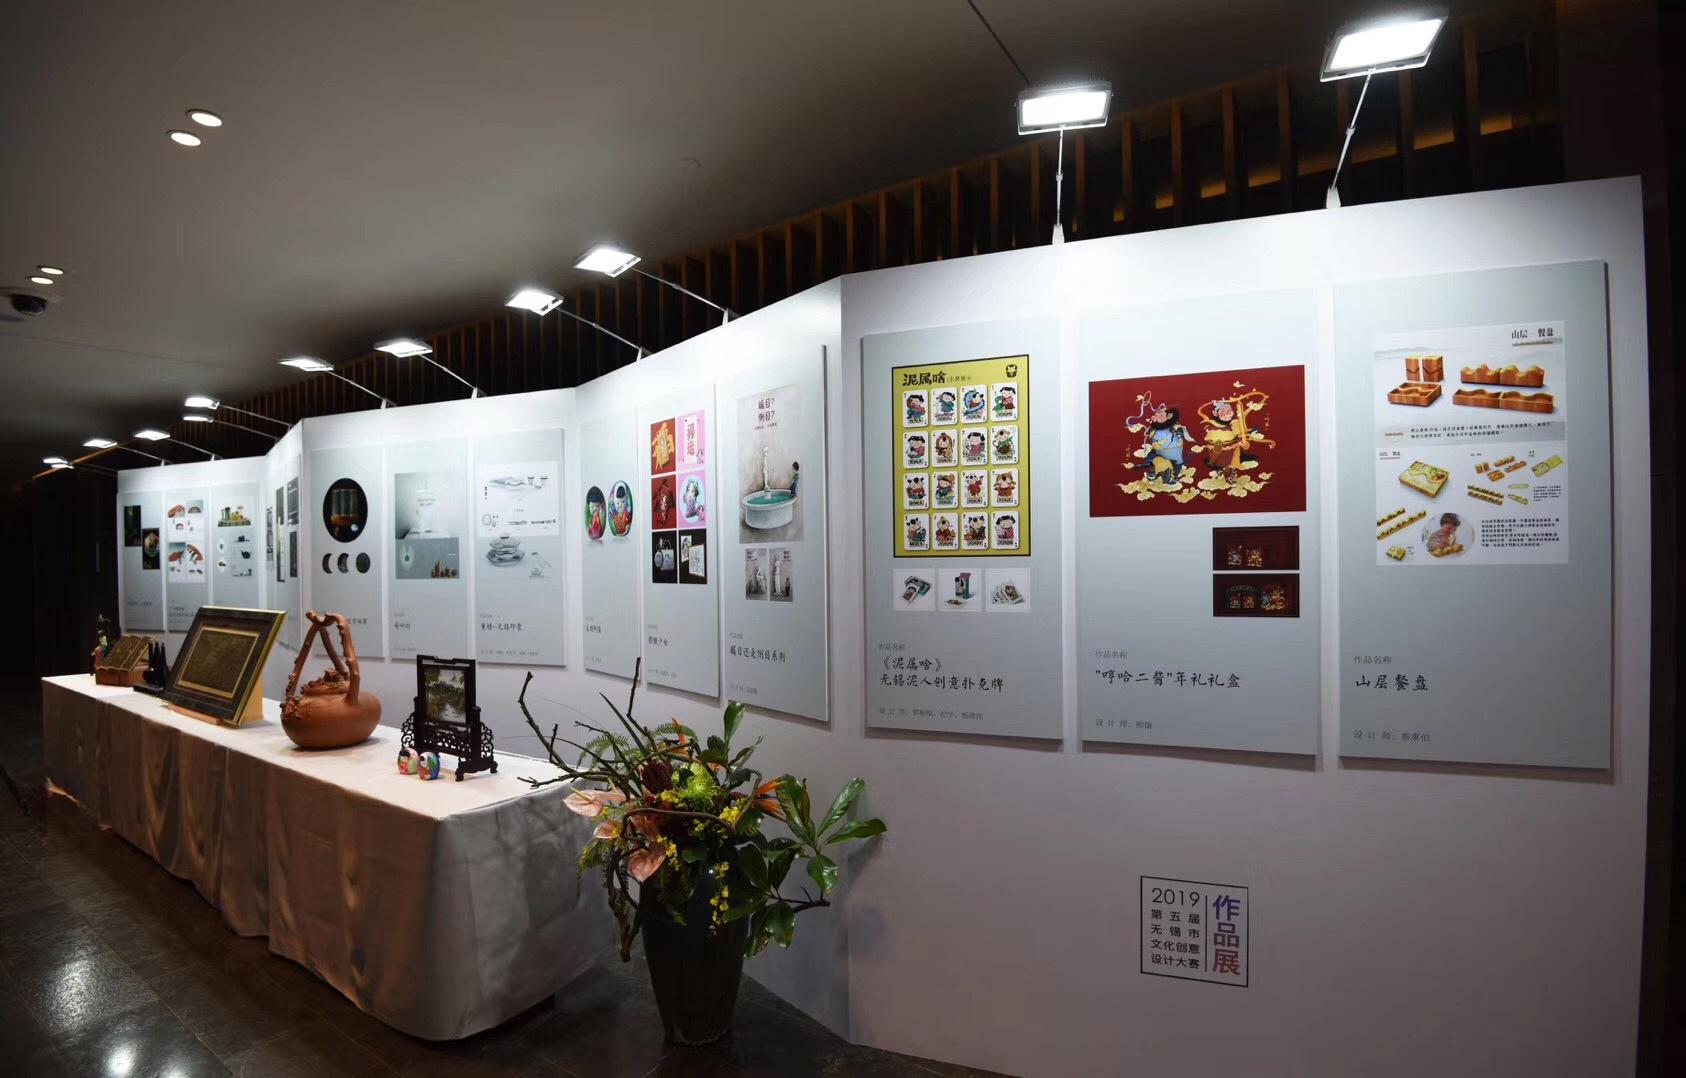 迪望文旅应邀出席2019第五届无锡市文化创意设计大赛颁奖盛典